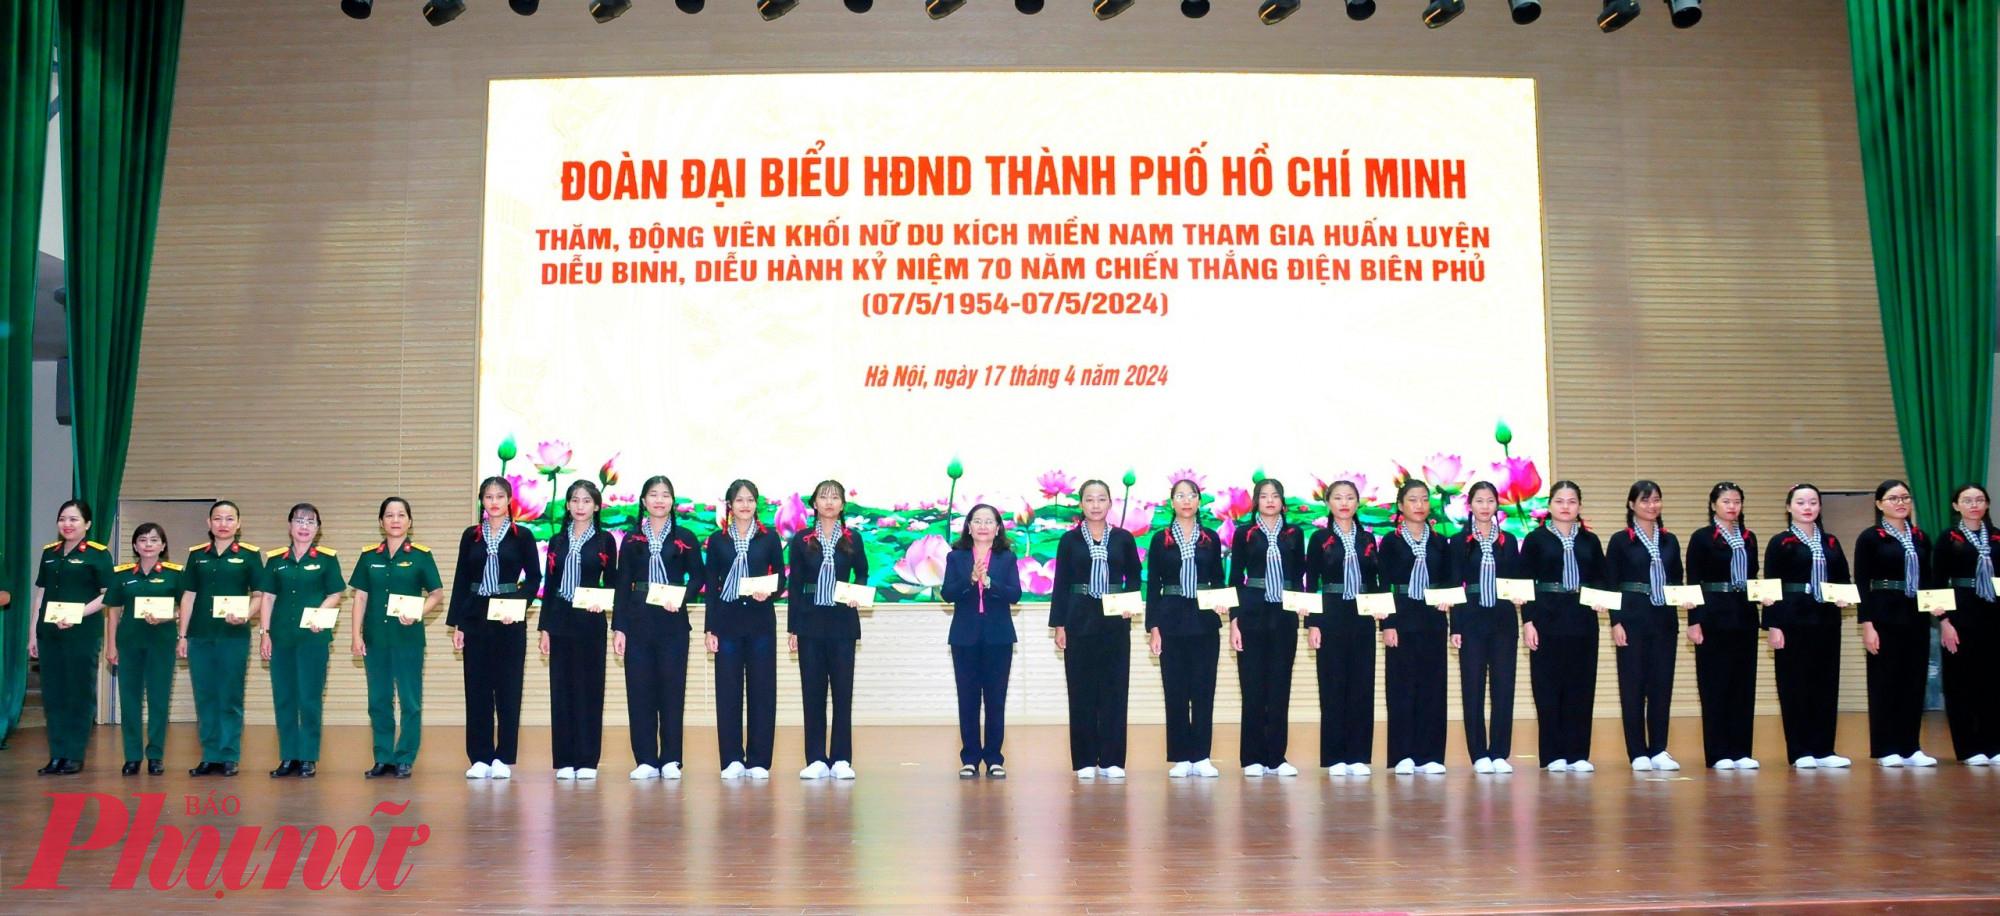 Đoàn đại biểu HĐND TPHCM do bà Nguyễn Thị Lệ - Phó Bí thư Thành ủy, Chủ tịch HĐND TPHCM làm Trưởng đoàn - đã đến thăm, động viên các bạn nữ du kích miềm Nam đang tham gia luyện tập tại Hà Nội. 